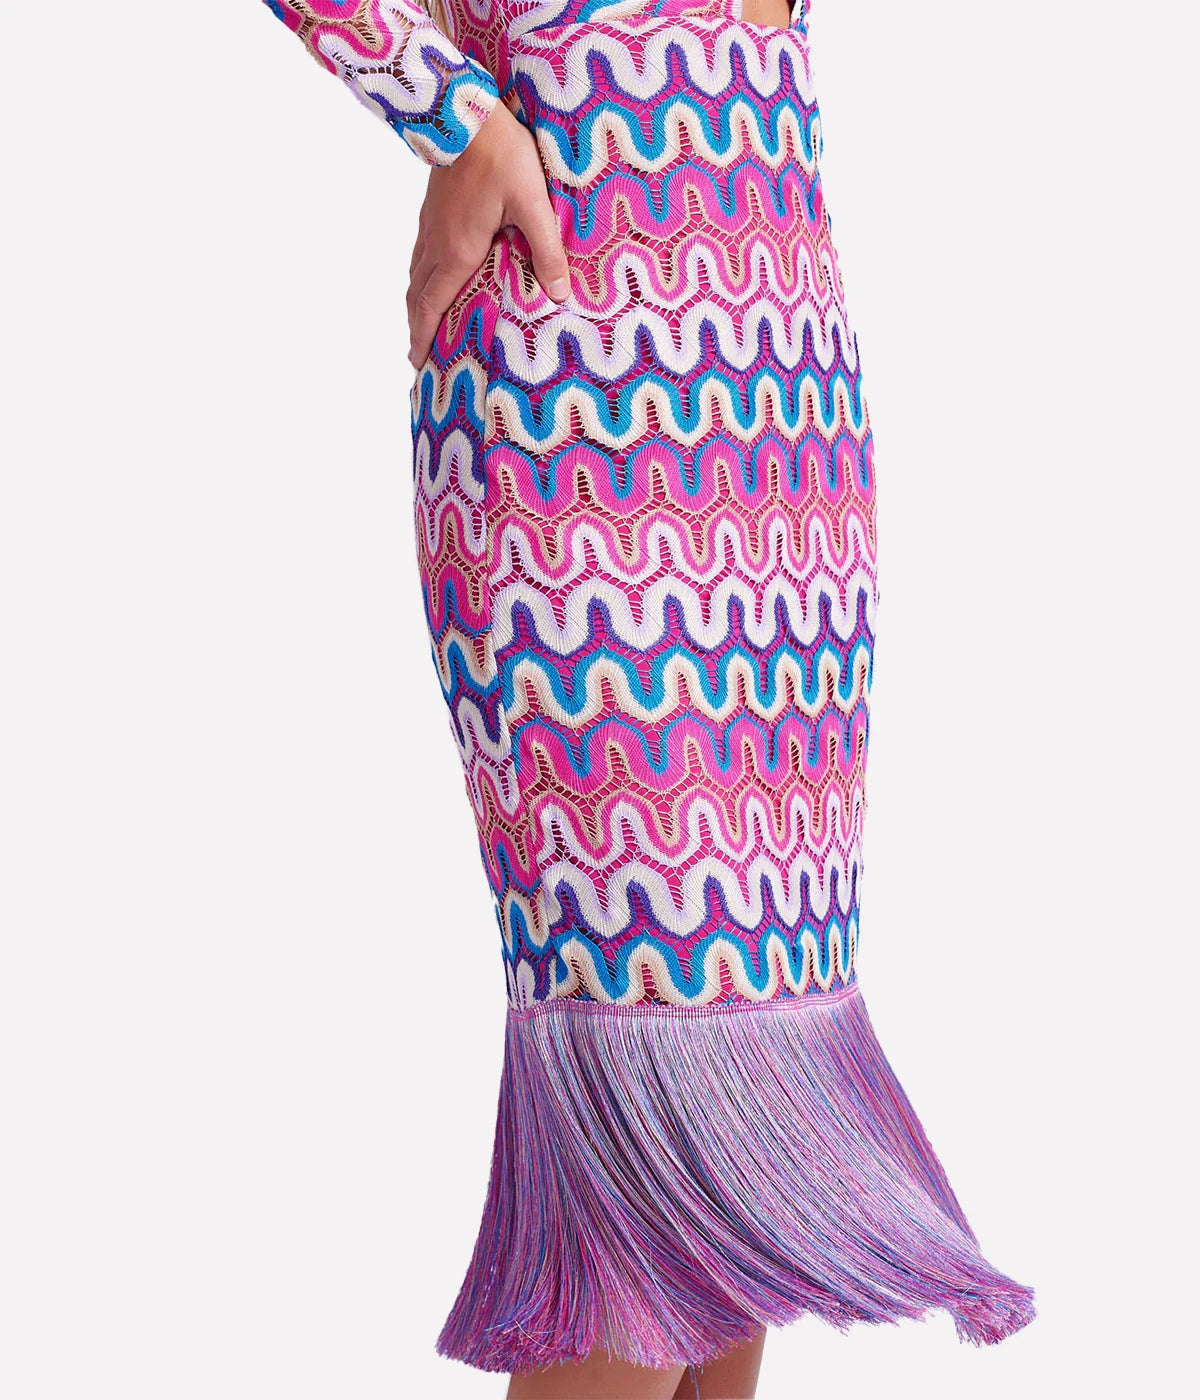 Crochet Cut-Out Fringe Midi Dress in Pink Multi